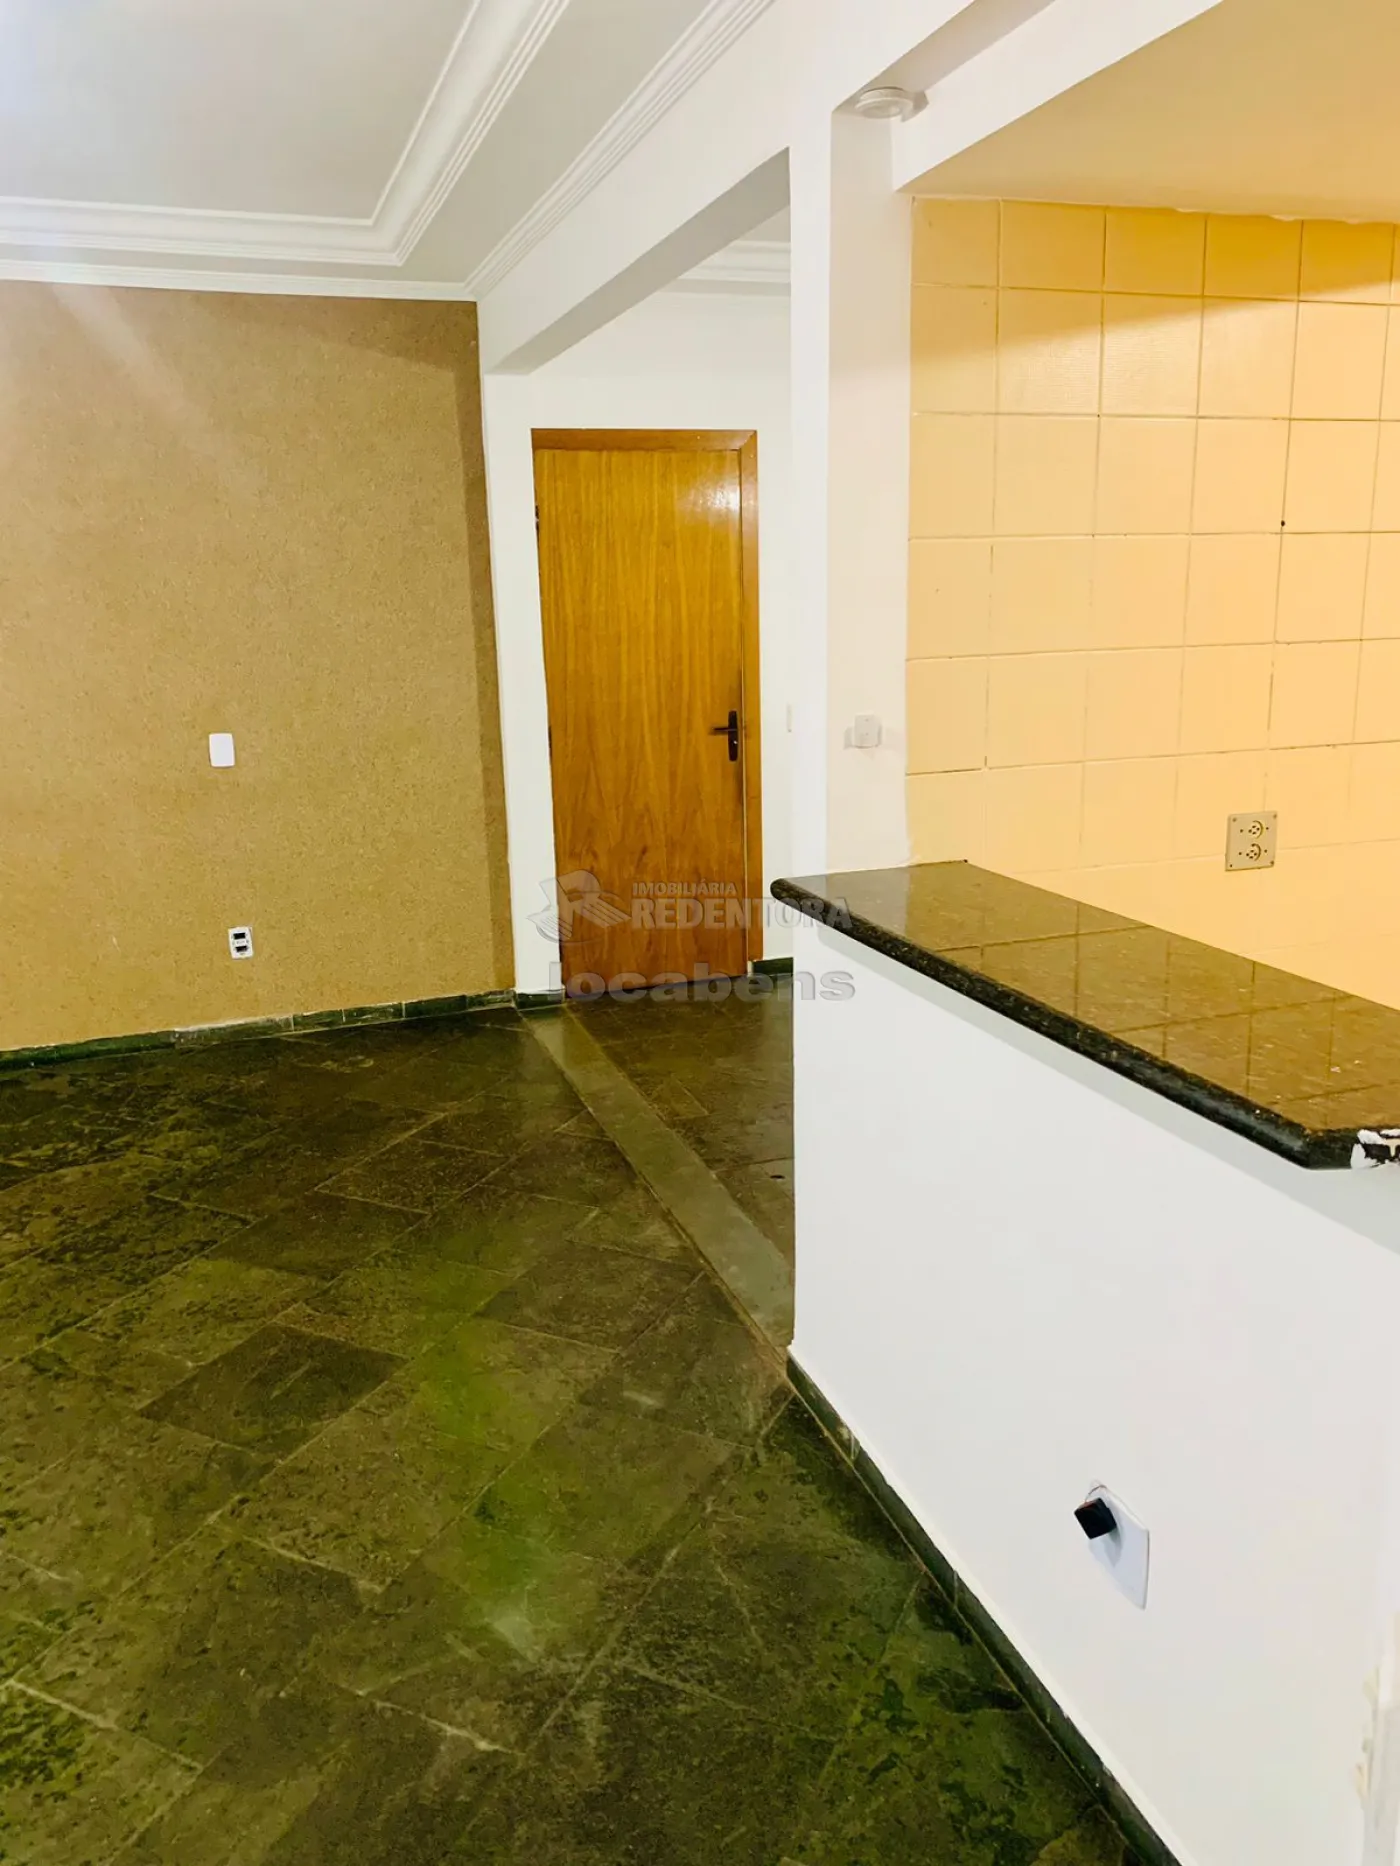 Alugar Apartamento / Padrão em São José do Rio Preto apenas R$ 421,36 - Foto 2